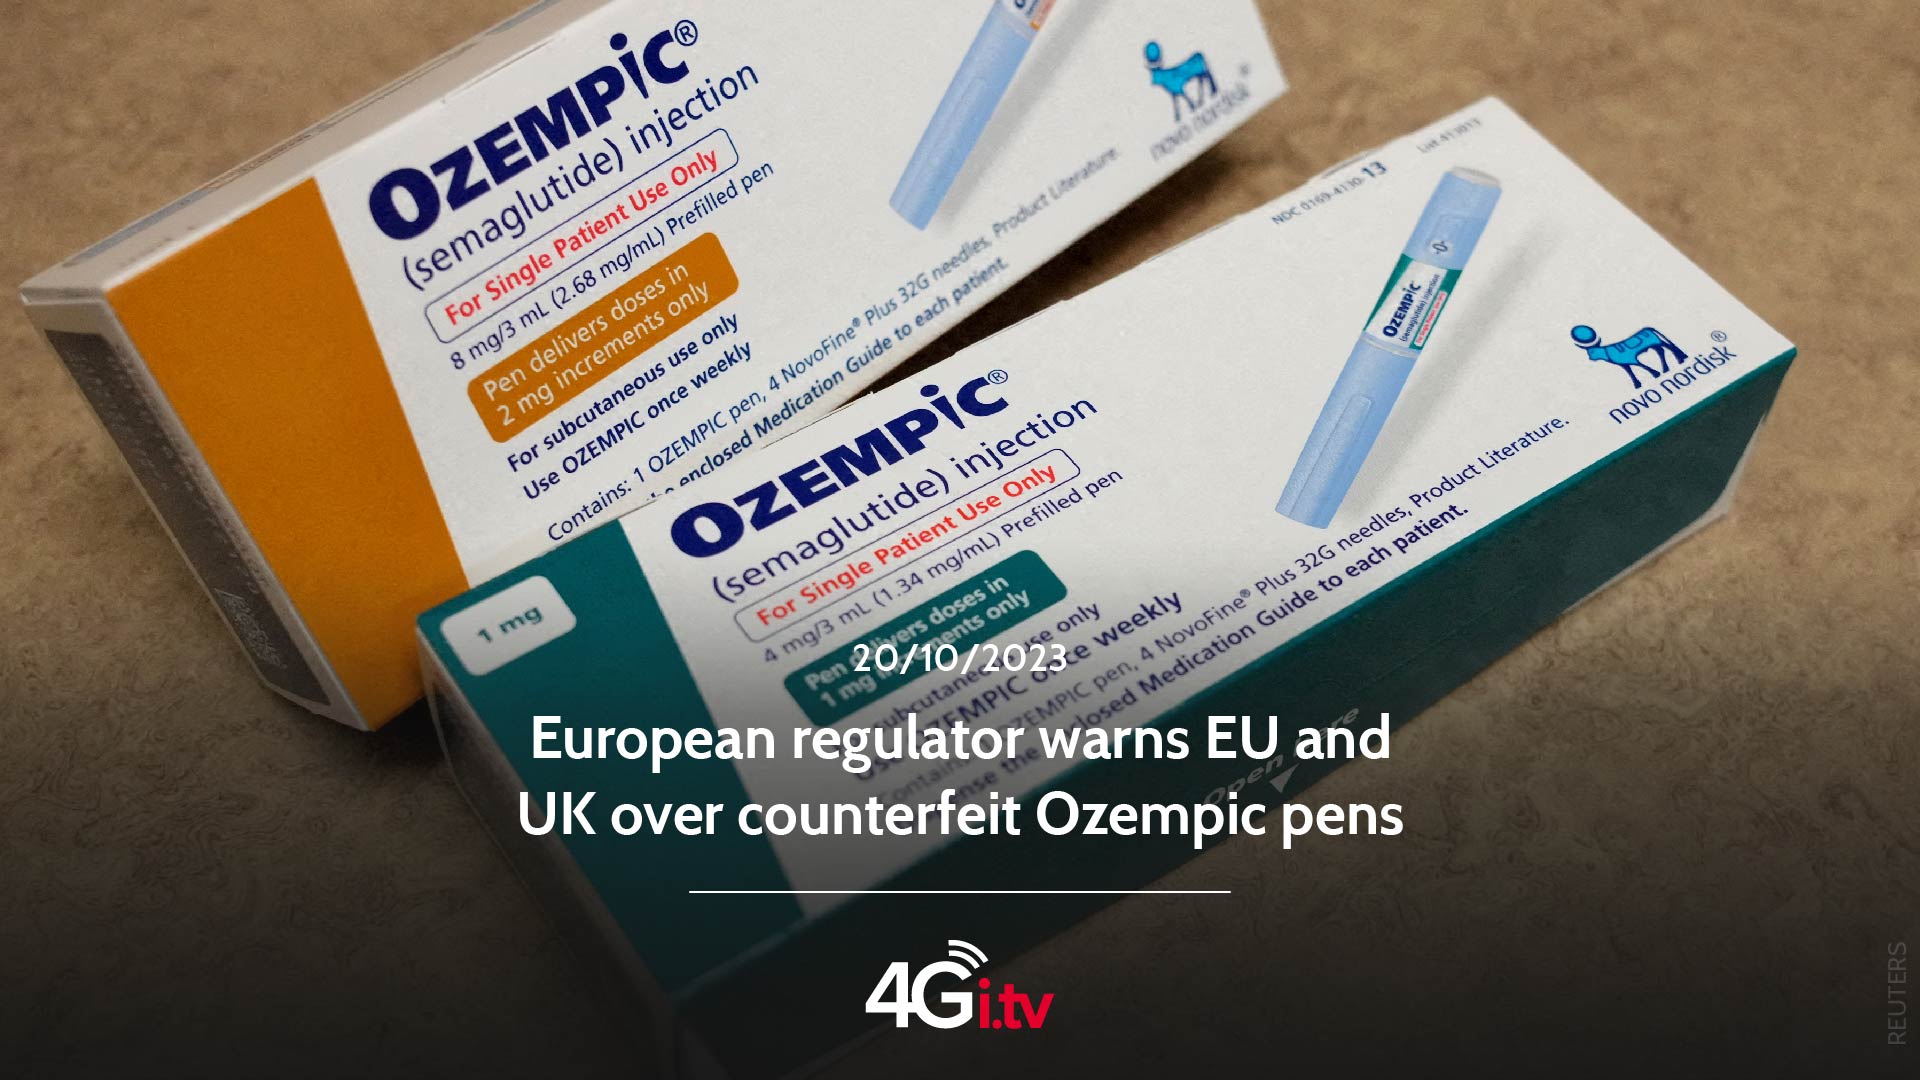 Подробнее о статье European regulator warns EU and UK over counterfeit Ozempic pens